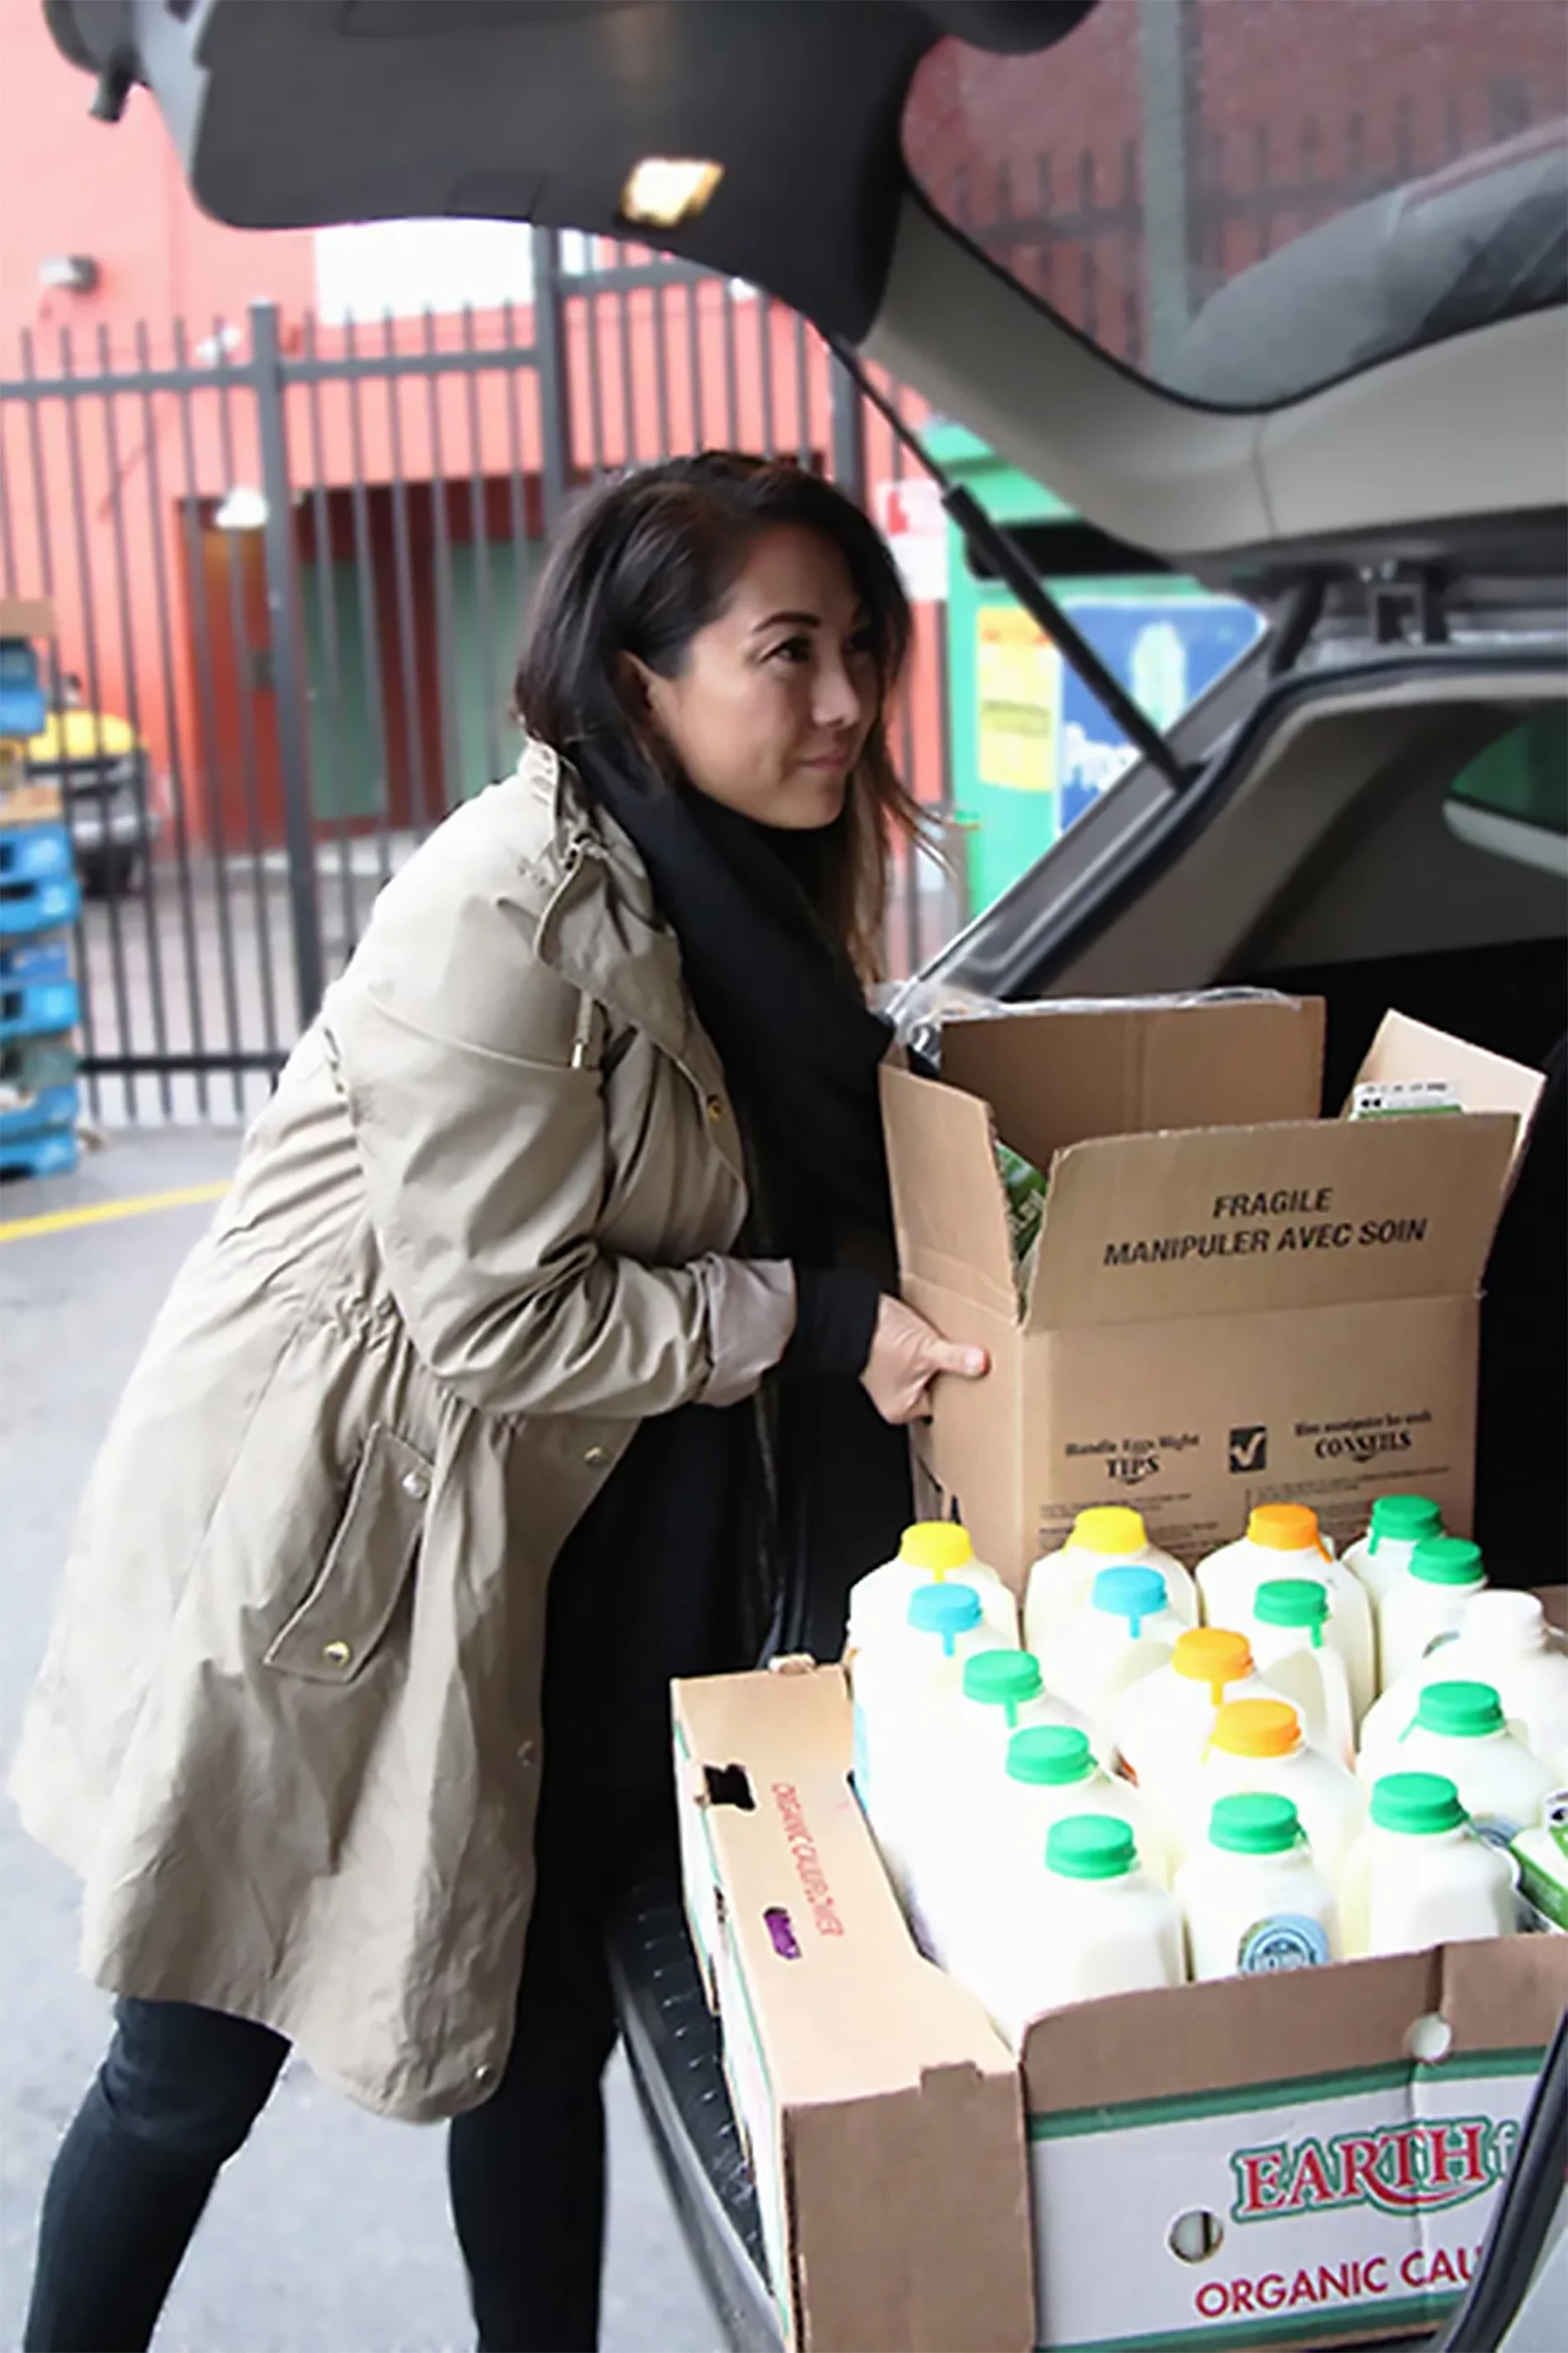 Lourdes Juan place des boîtes de nourriture dans un véhicule.

